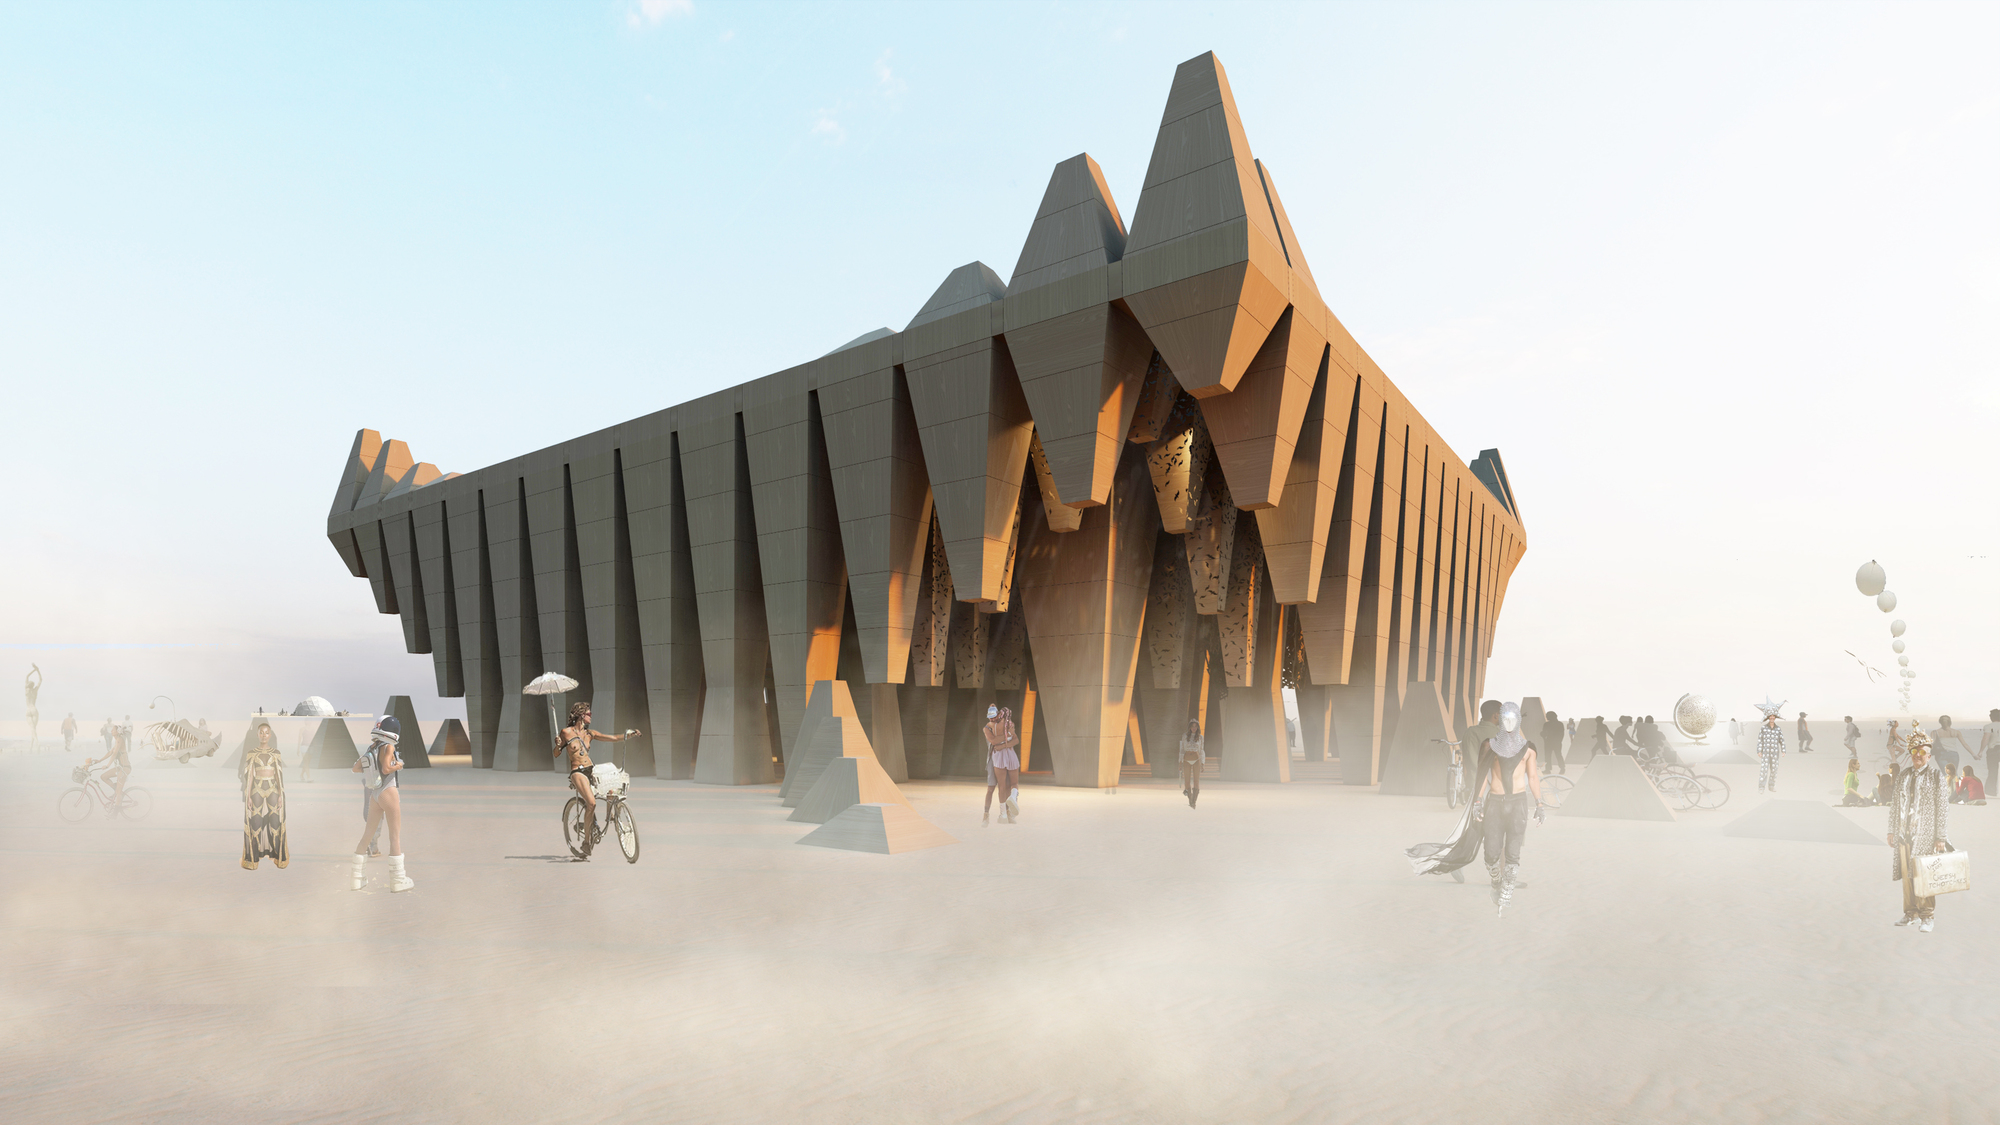 Концепция храма Burning Man и павильон для выставки Expo 2025 в Осаке: 8 конкурсных предложений, представленных сообществом